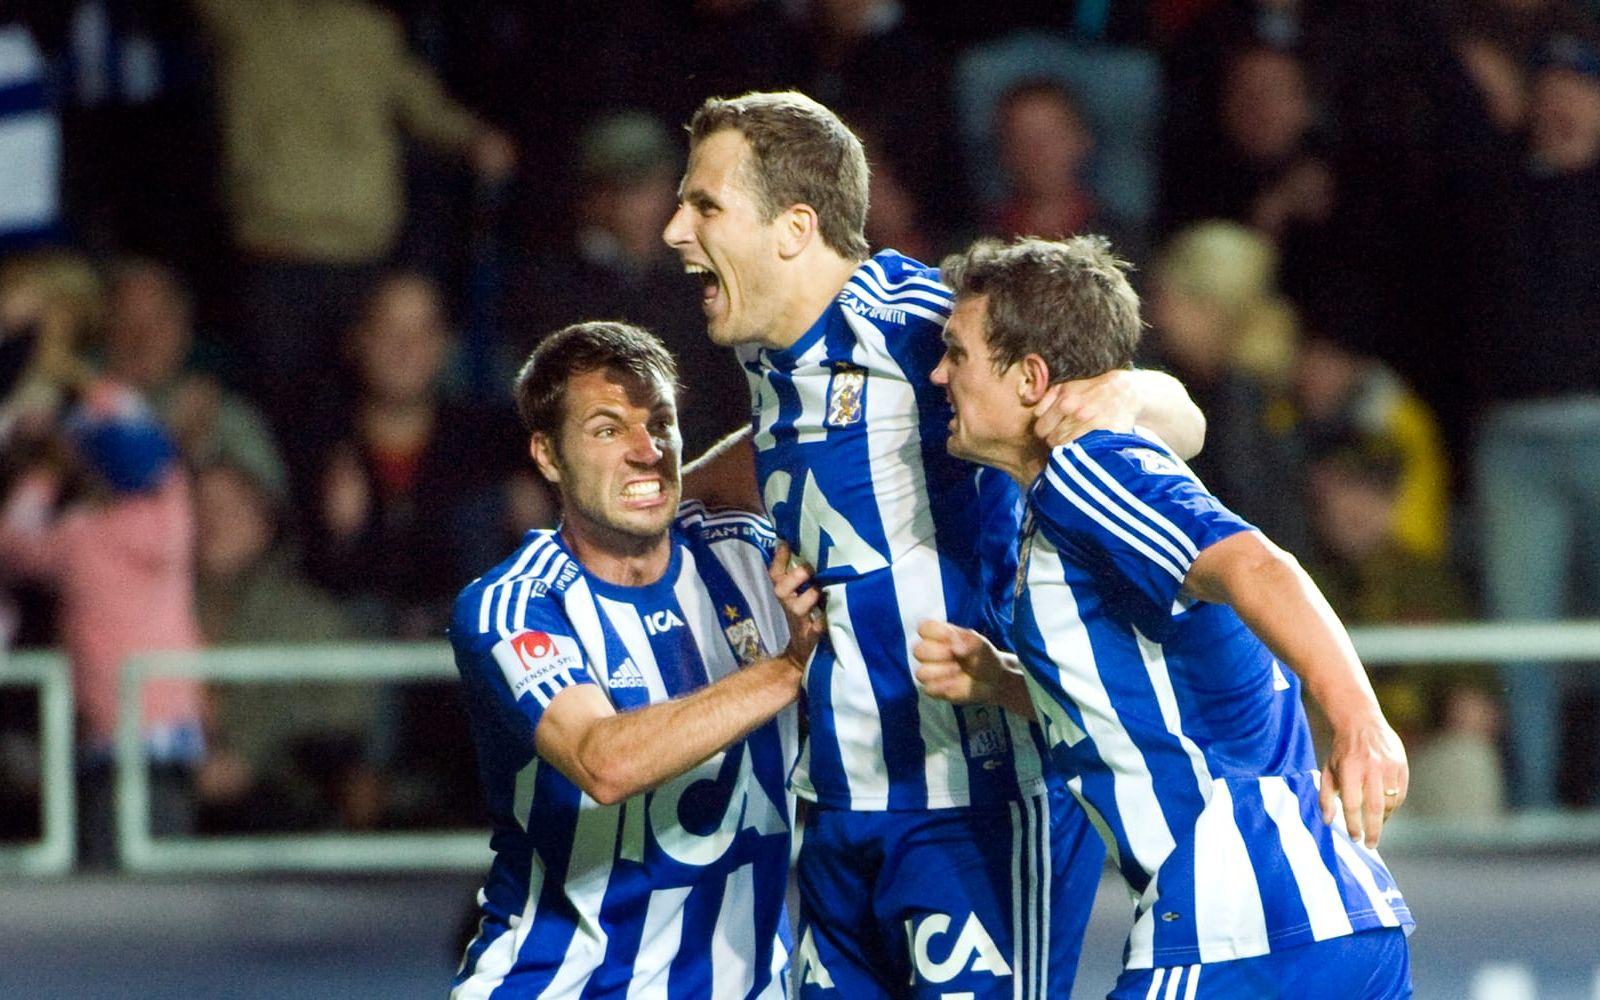 2009: IFK Göteborg-Elfsborg 4-0. Hjalmar Jonsson spräckte målnollan i inledningen av den andra halvleken med en frispark. Sedan fyllde Hannes Stiller på med två fullträffar innan den allsvenska skyttekungen för året, Tobias Hysén, satte spiken i kistan.